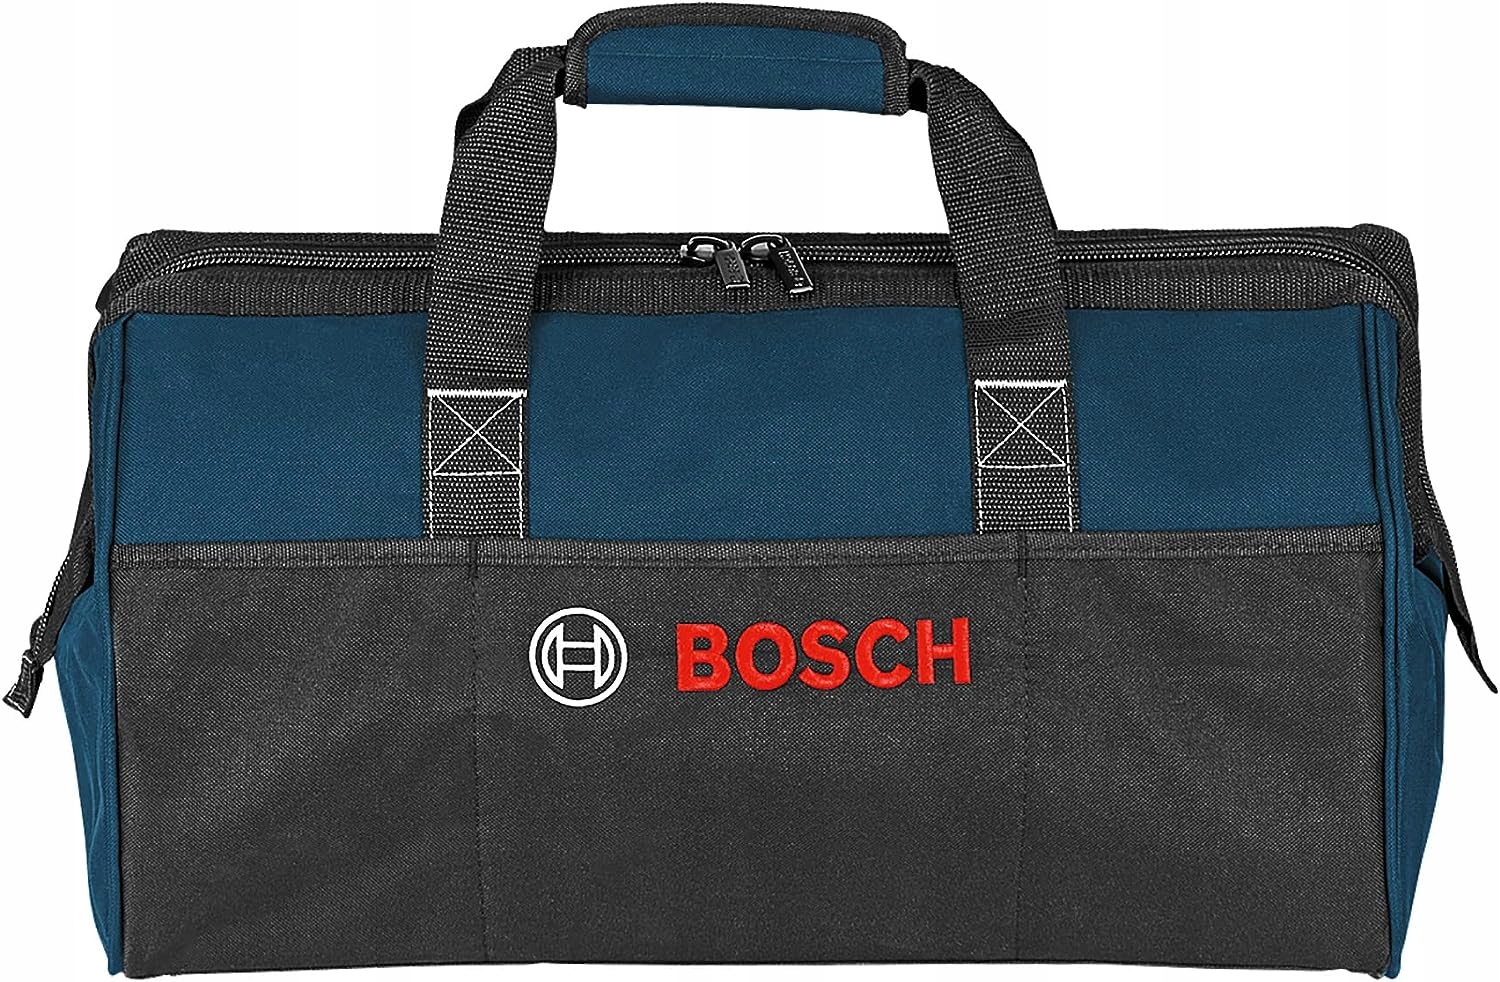 Сумка для инструментов Bosch 1619a003bk. Сумка Bosch 1619bz010. Сумка Bosch professional t Bag Minipack. Сумка Bosch 1619bz010 дно.